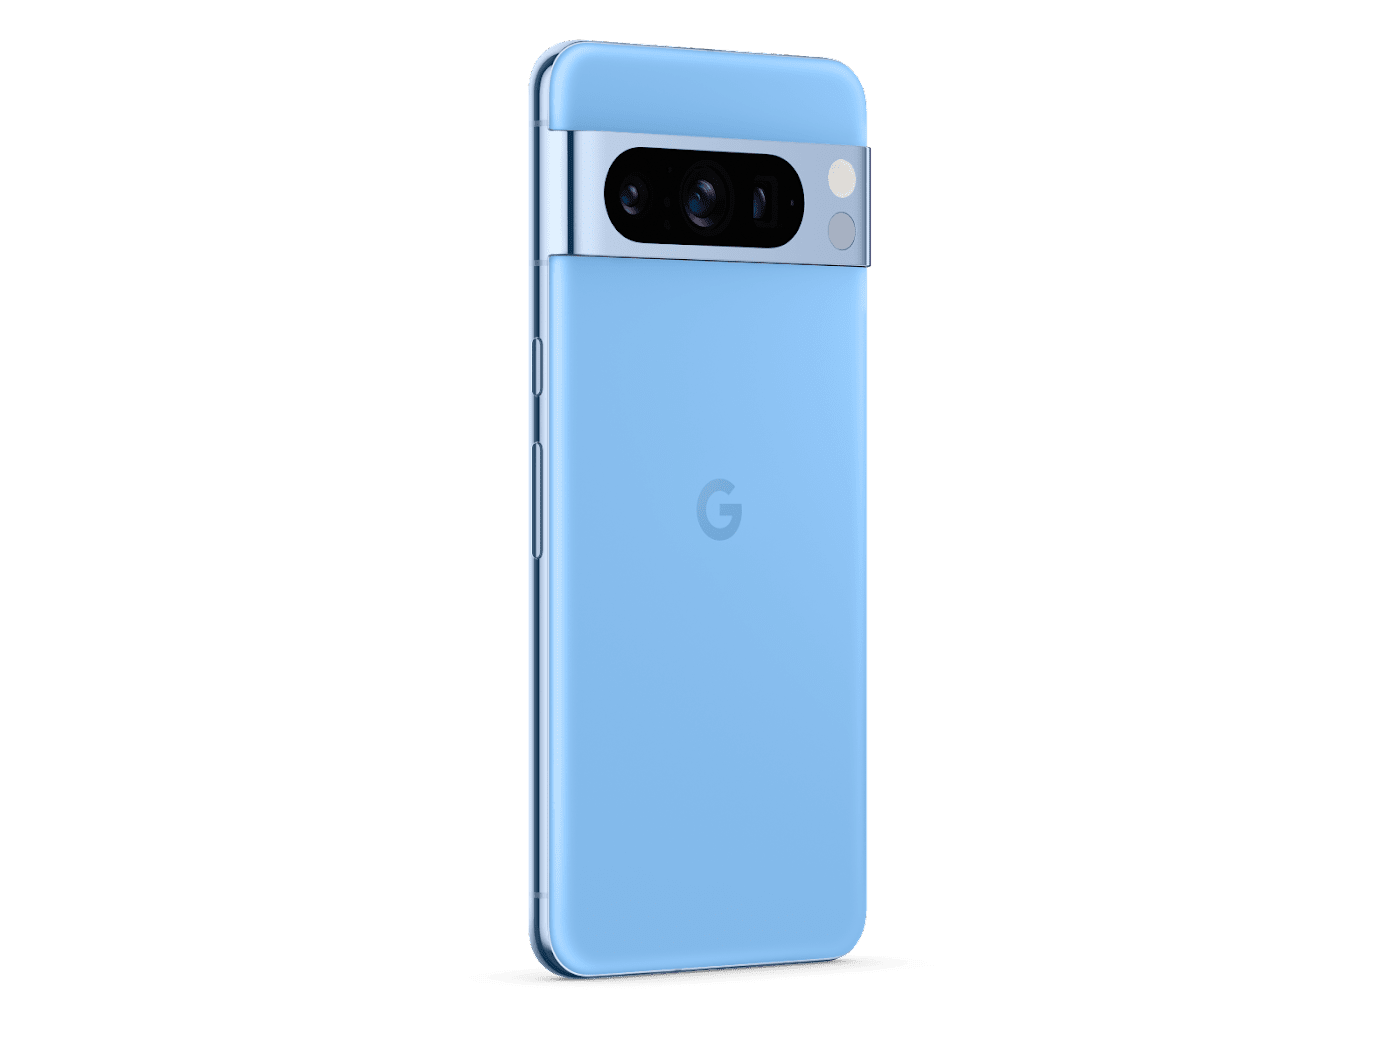 Google Pixel 8 Pro -Smartphone Android libre con lente teleobjetivo,  batería con autonomía de 24 horas y pantalla Super Actua - Obsidiana, 128GB  : : Electrónica